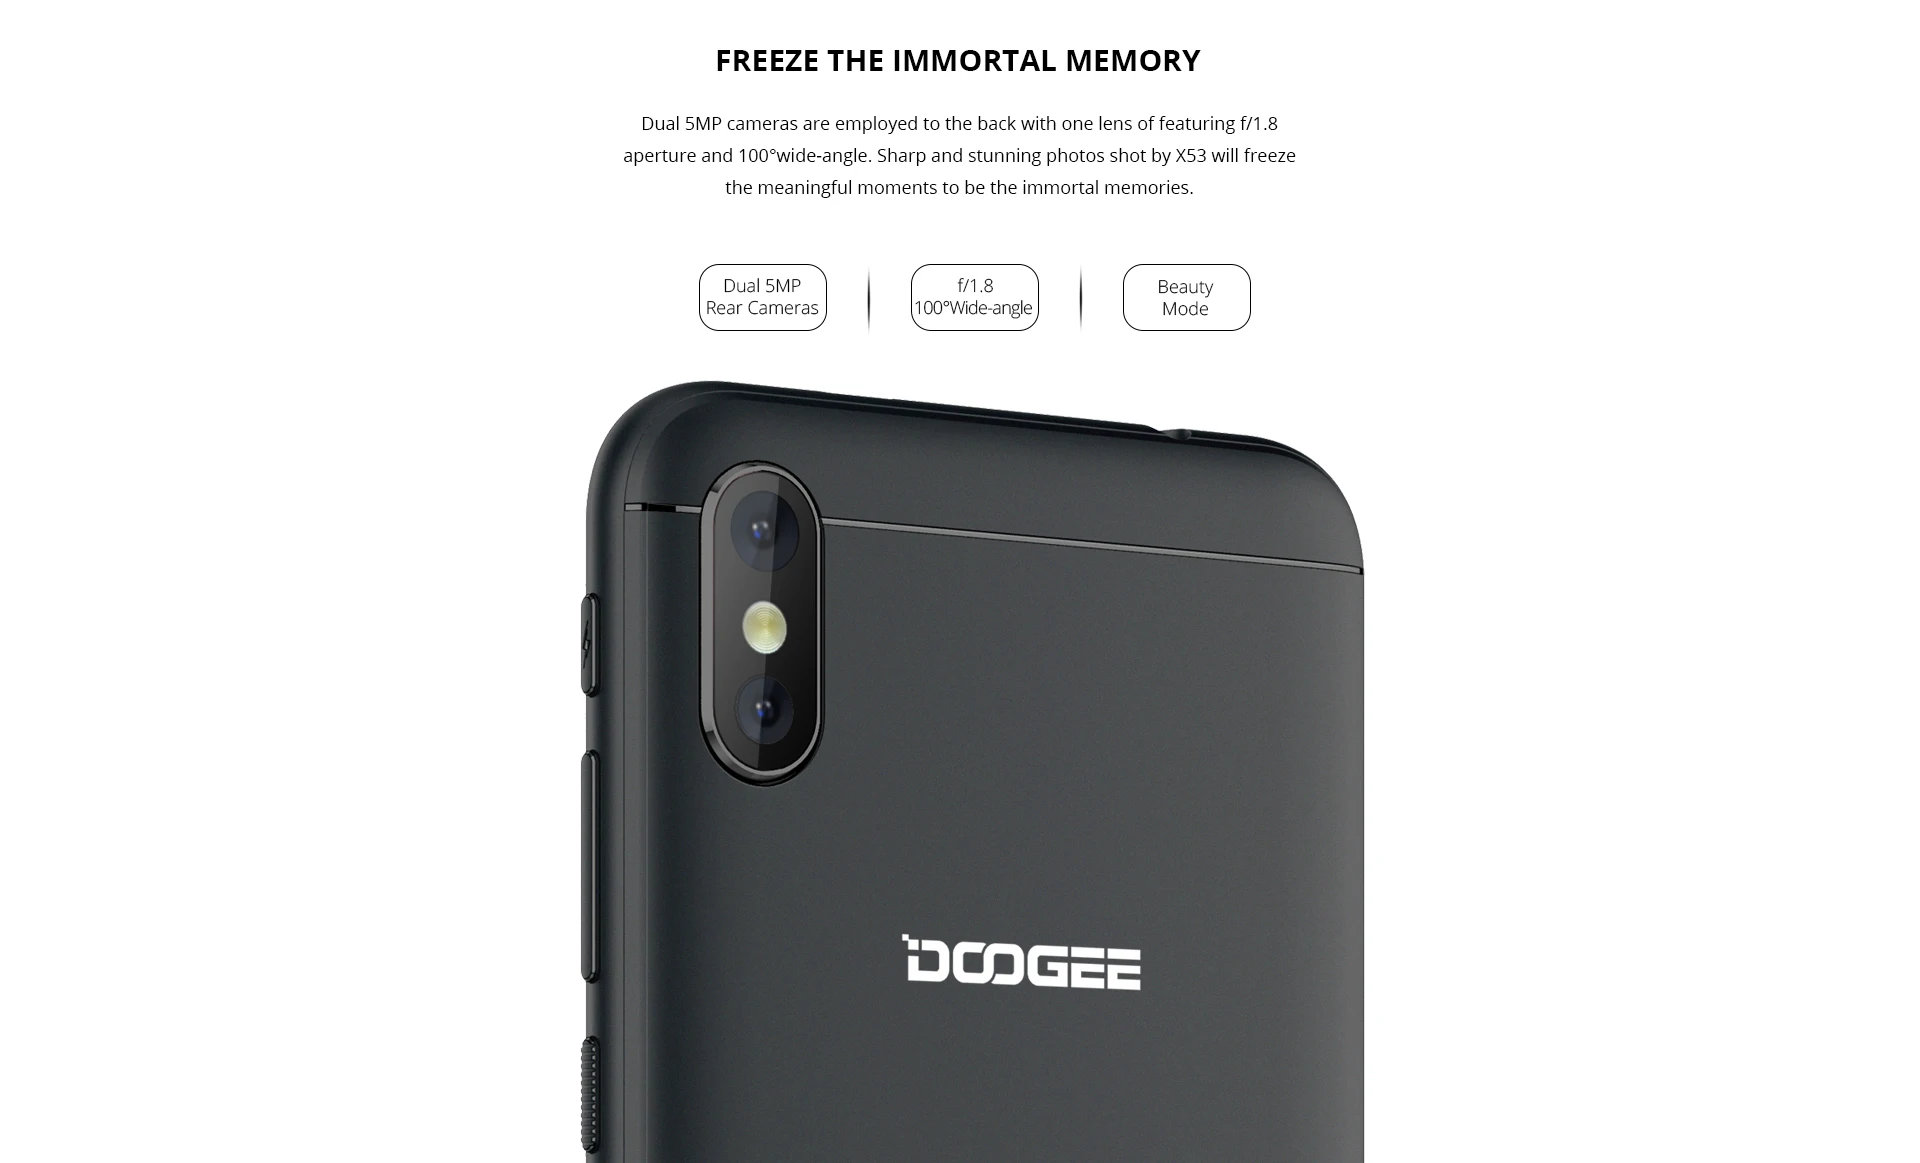 Doogee X53 смартфон MT6580M четырехъядерный мобильный телефон 5,3 дюймов 1 ram 16 rom Android 7,0 2200 мАч двойная 5 Мп настоящая камера 3g мобильный телефон